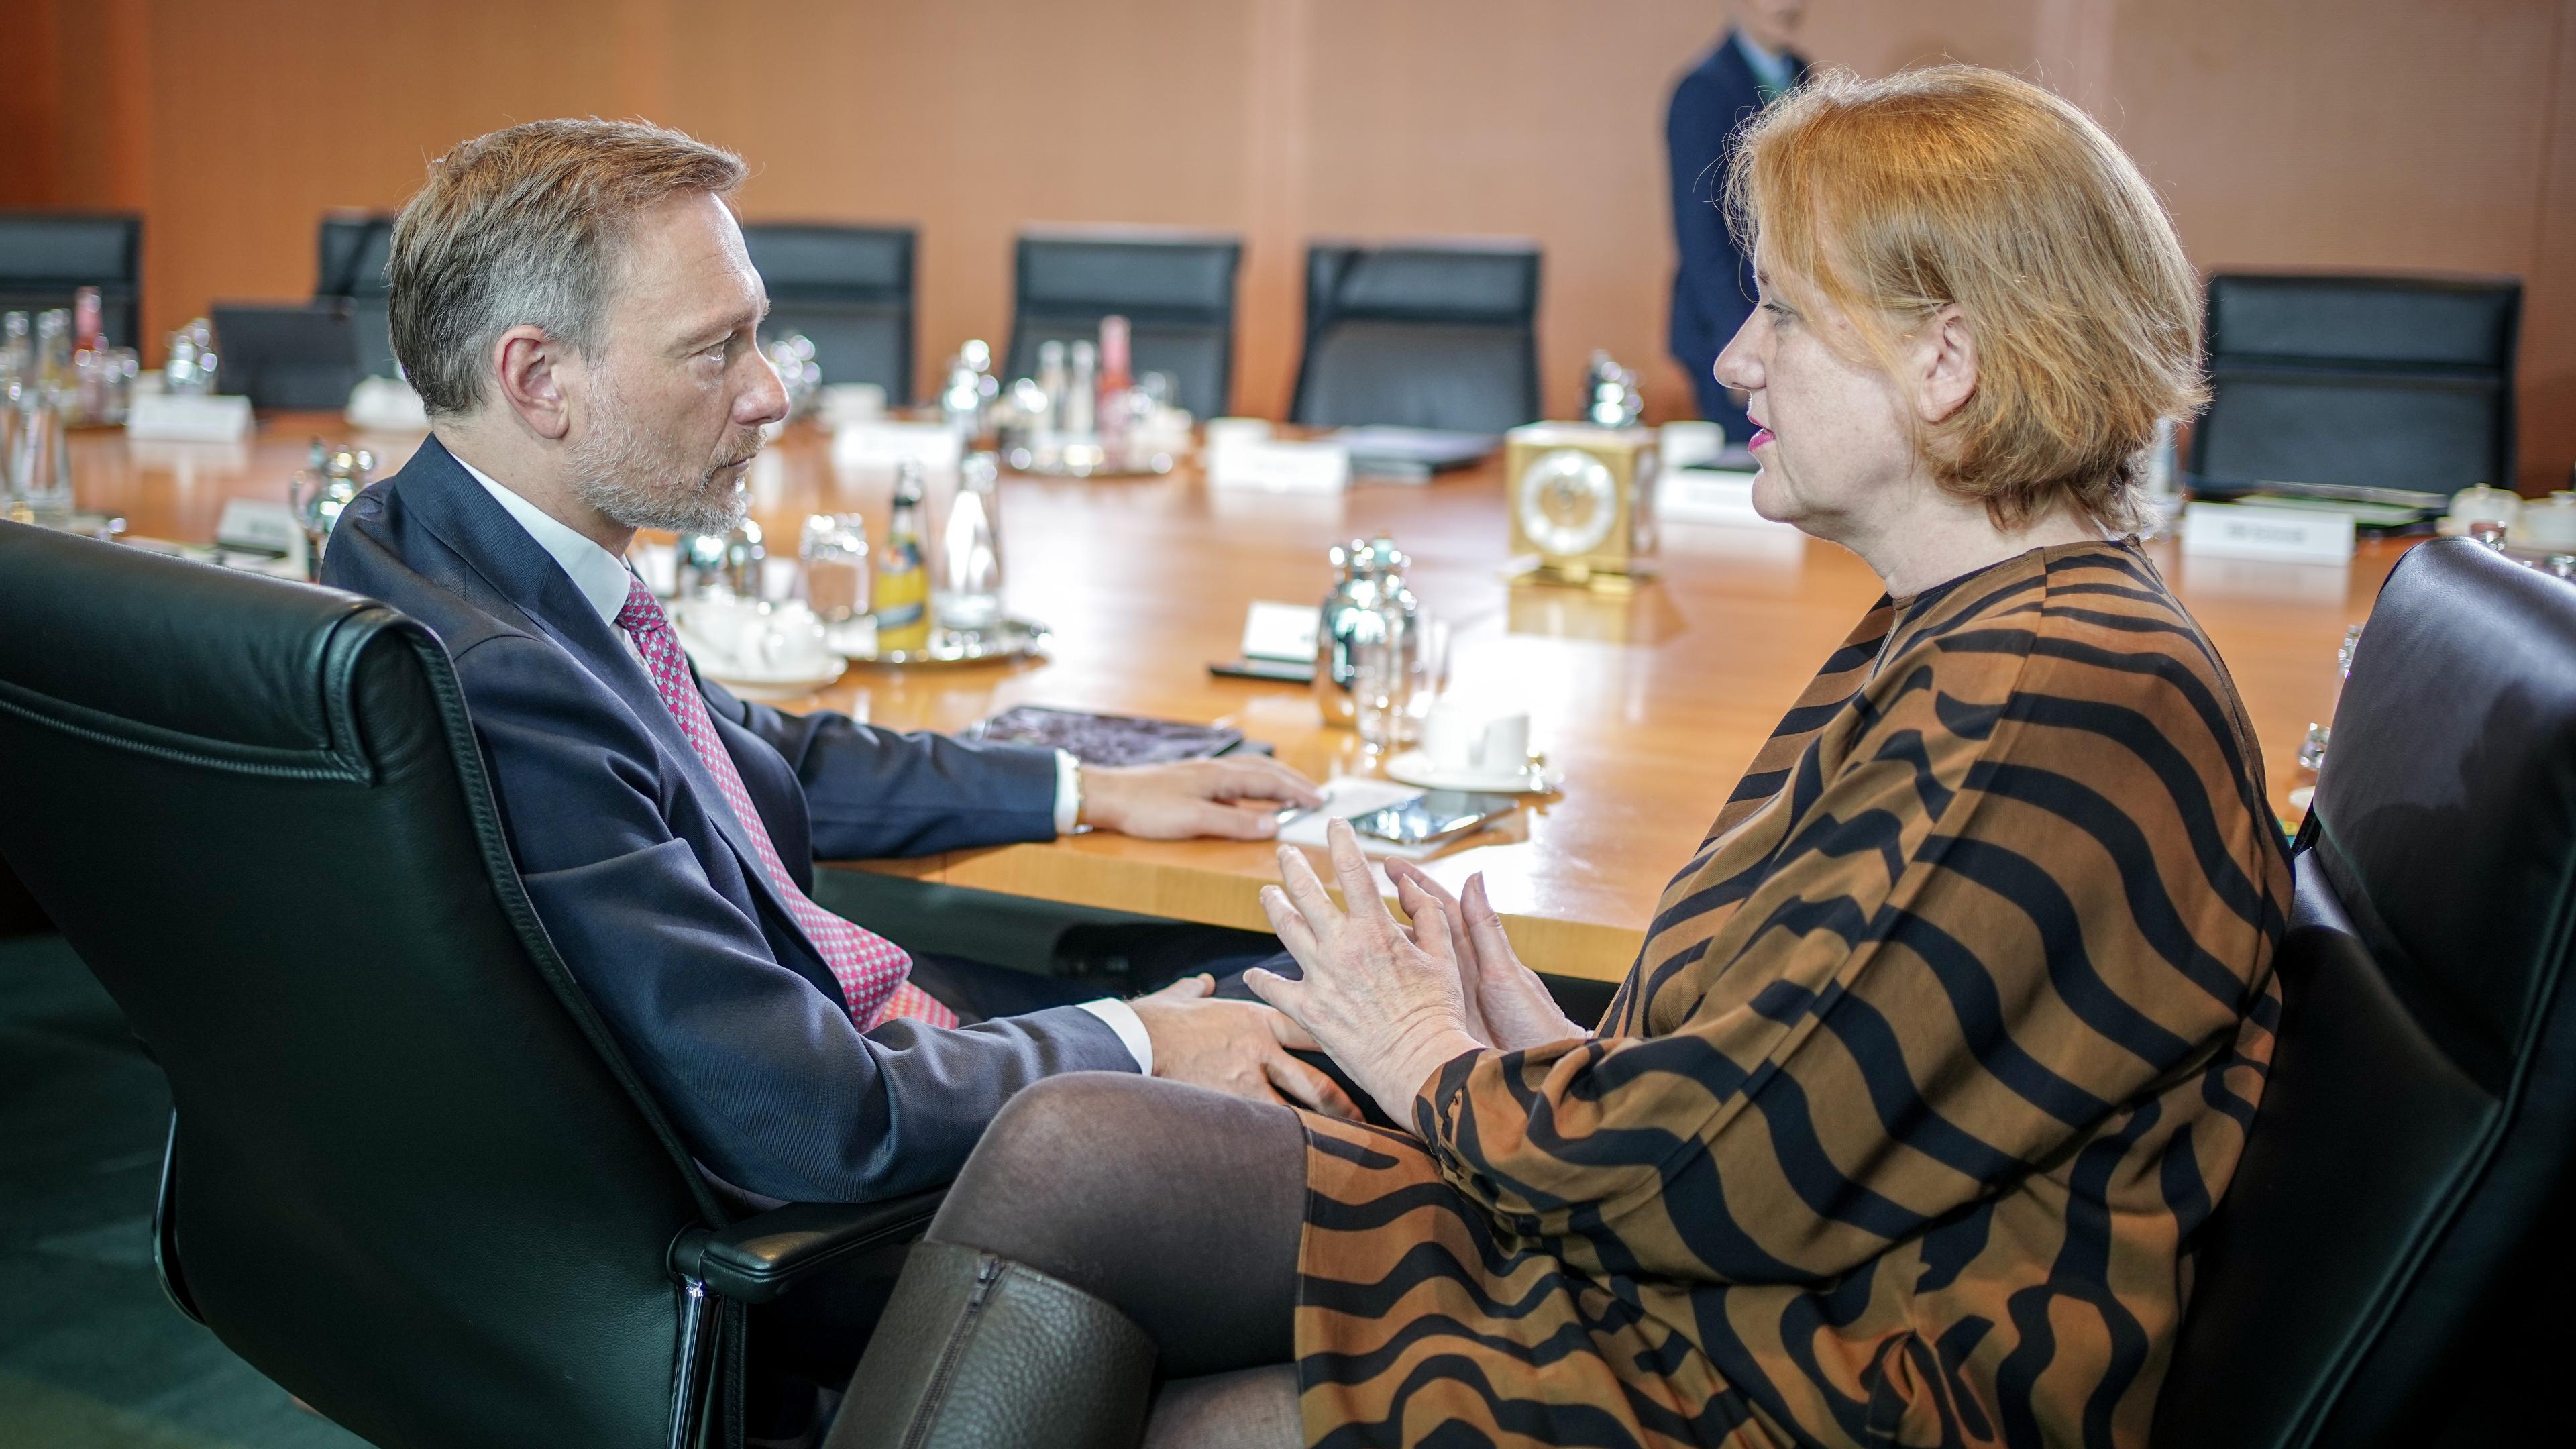 Finanzminister Christian Lindner und Bundesfamilienministerin Lisa Paus sind sitzend im Profil zu sehen. Sie unterhalten sich an einem Konferenztisch.